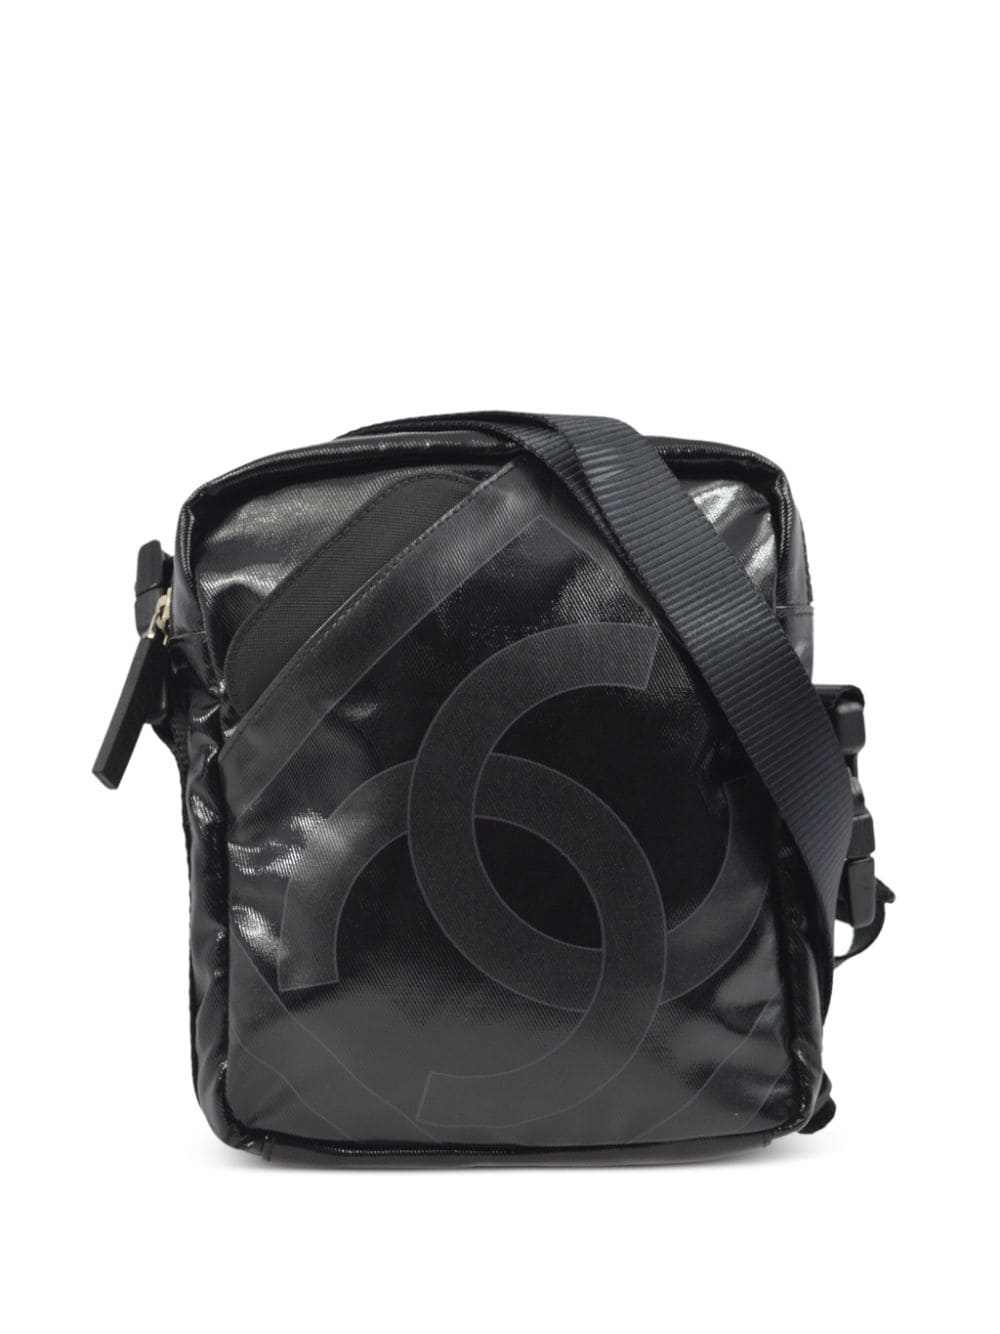 Pre-owned Chanel 2007 Sports Line Shoulder Bag In Black